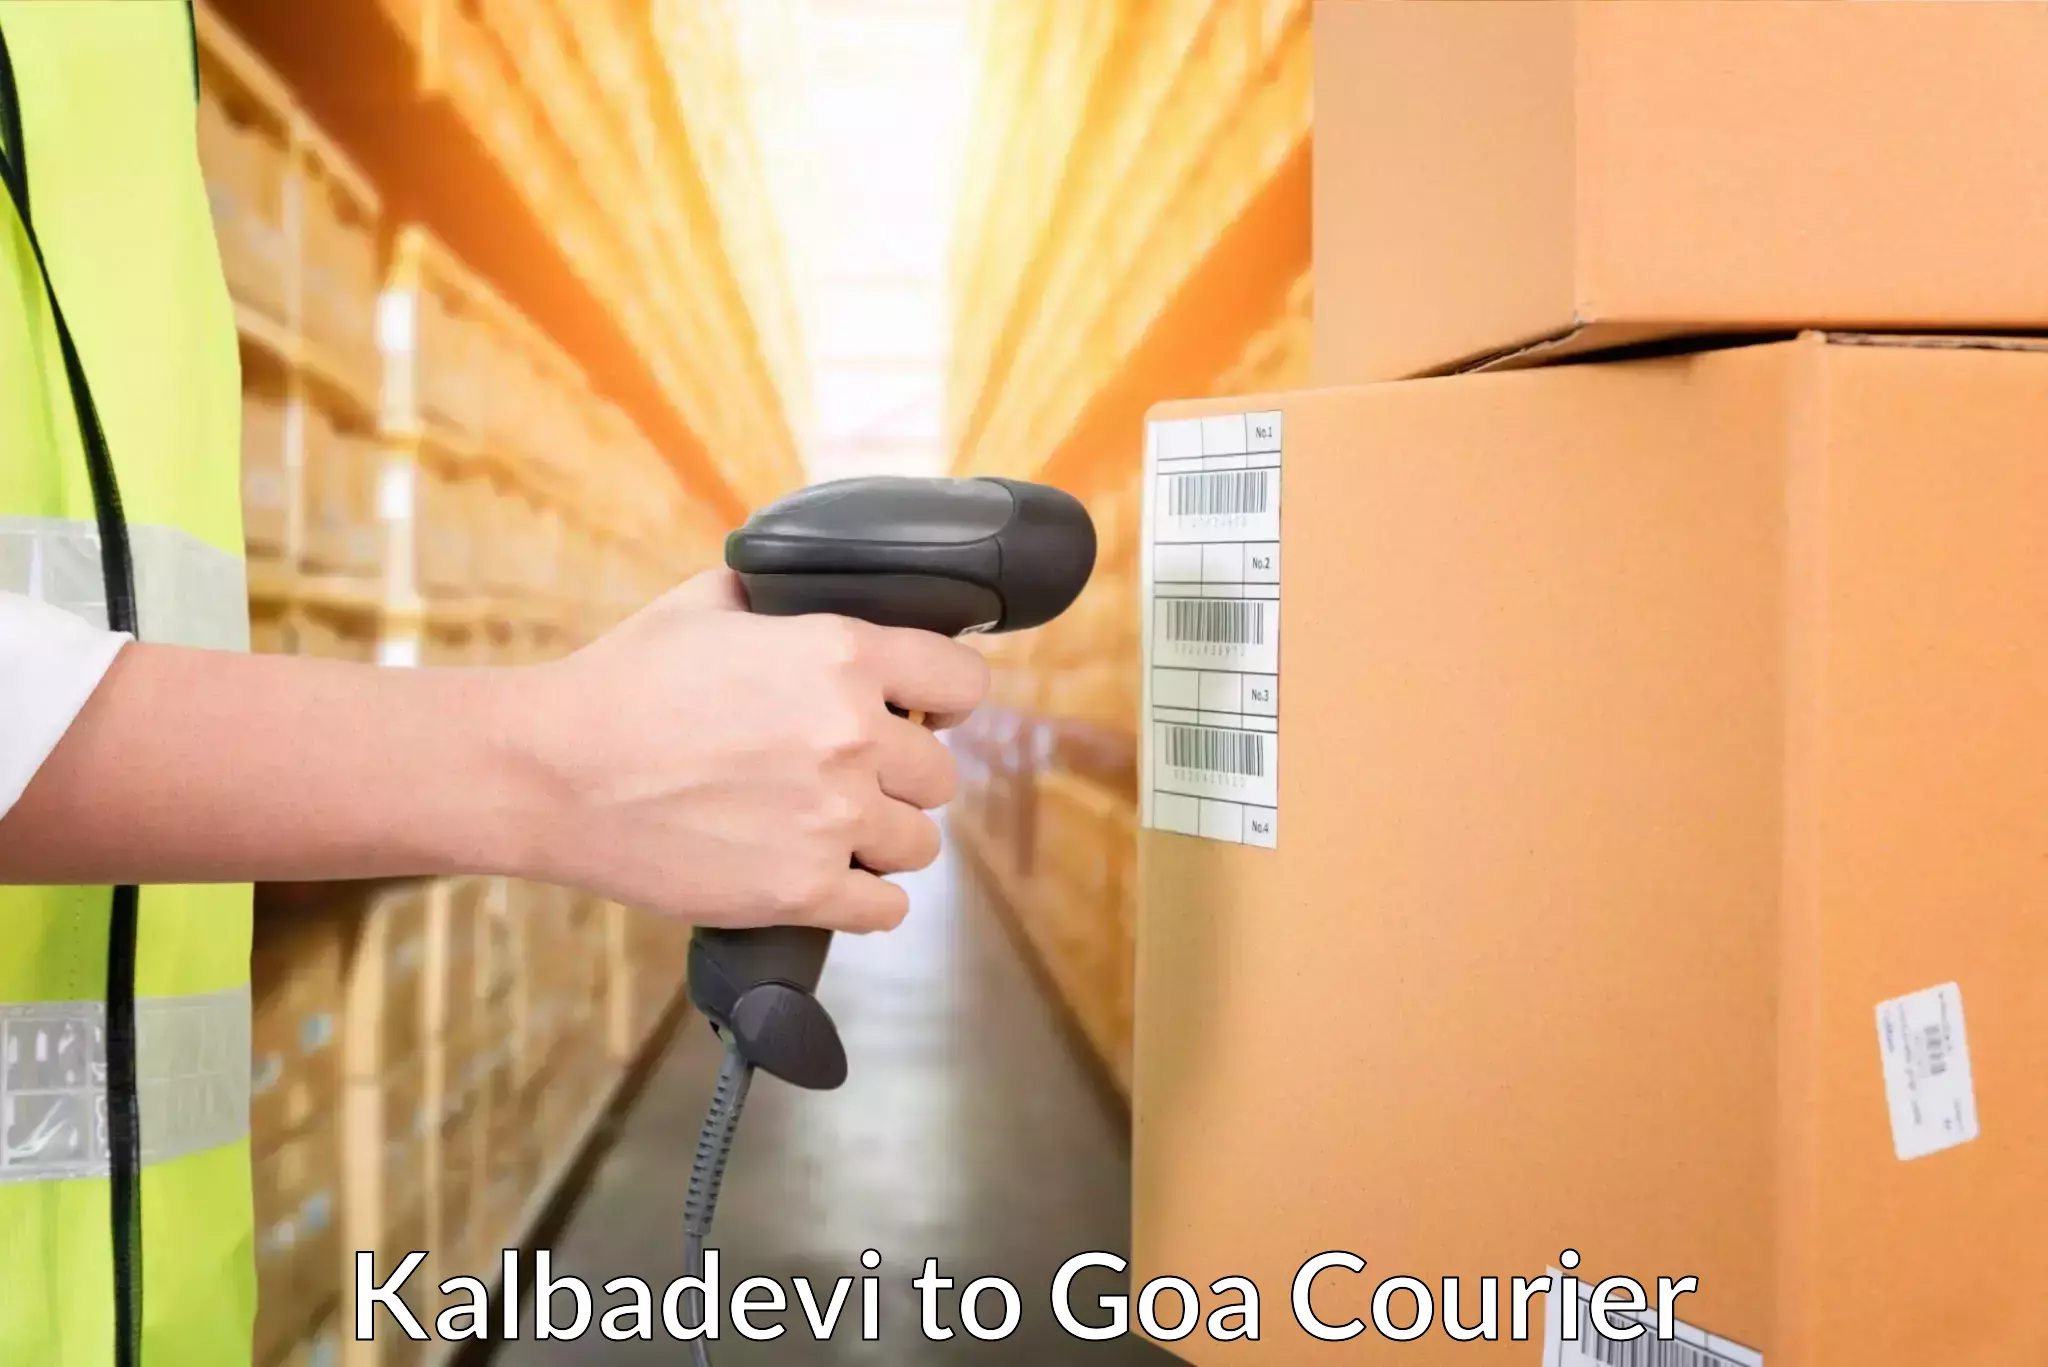 Advanced tracking systems Kalbadevi to Goa